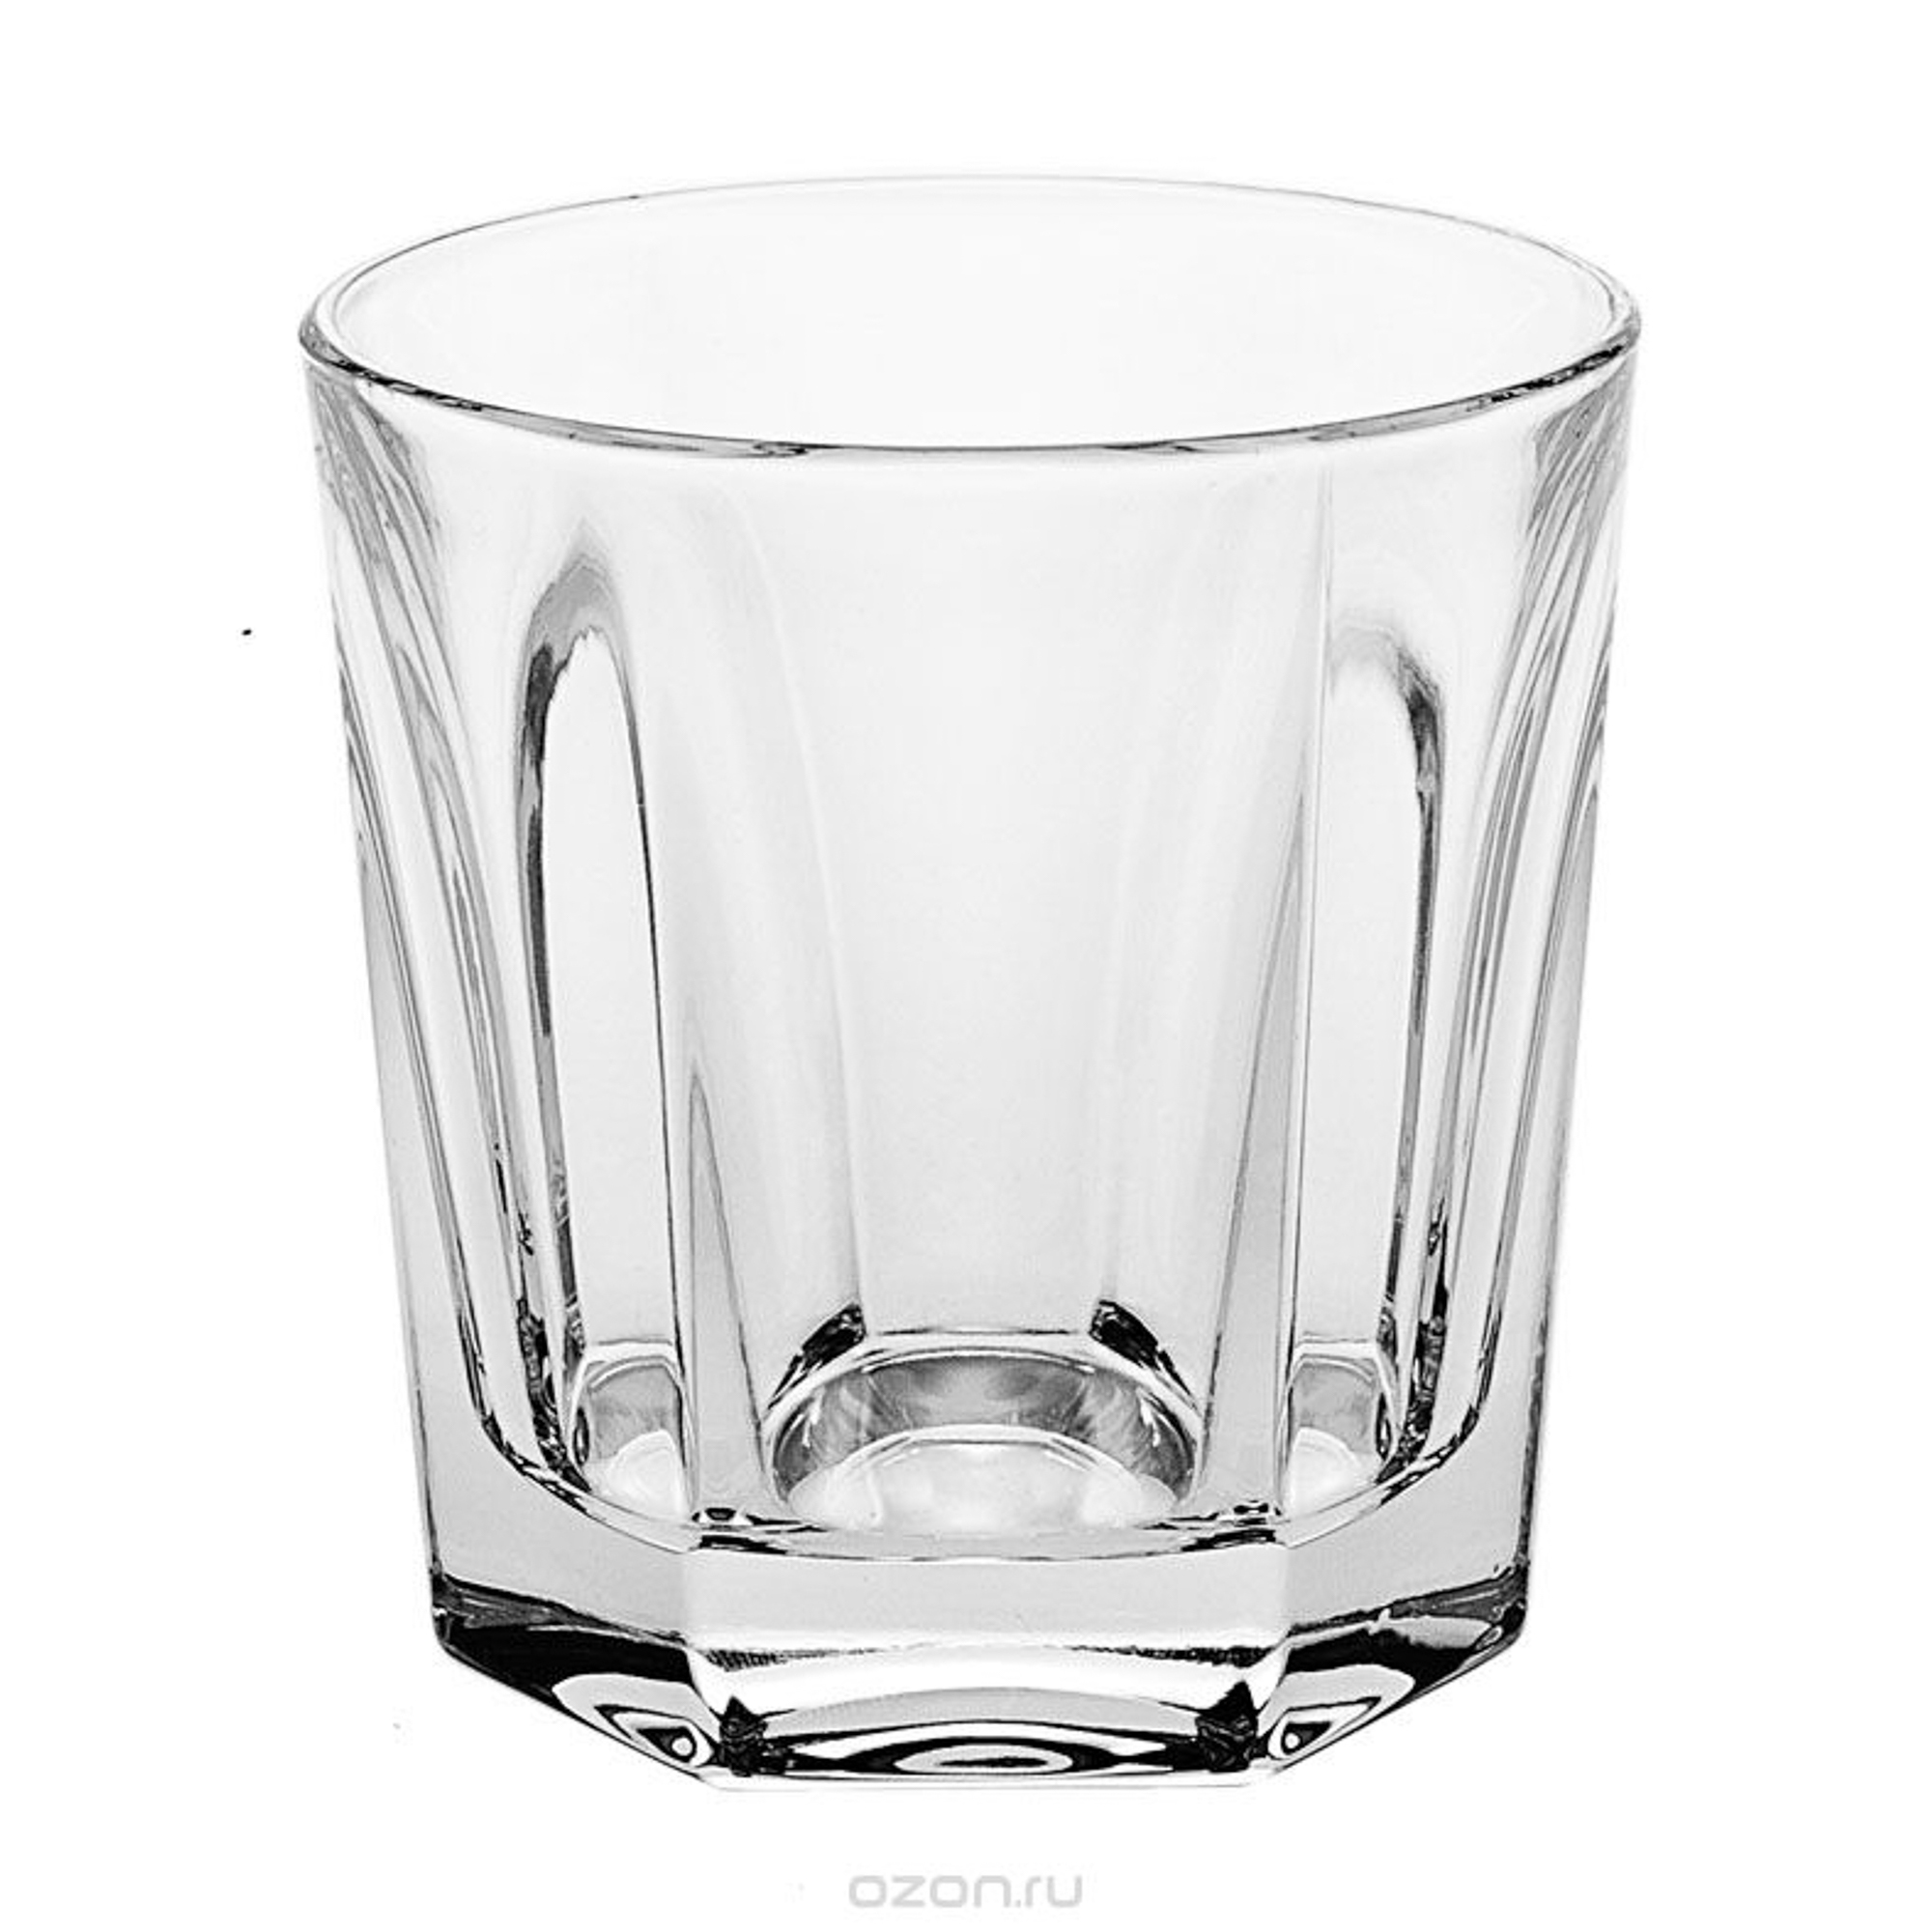 Набор для виски Bohemia- Пром виктория графин + 6 стаканов(990/99999/9/44600/232/701) - фото 3